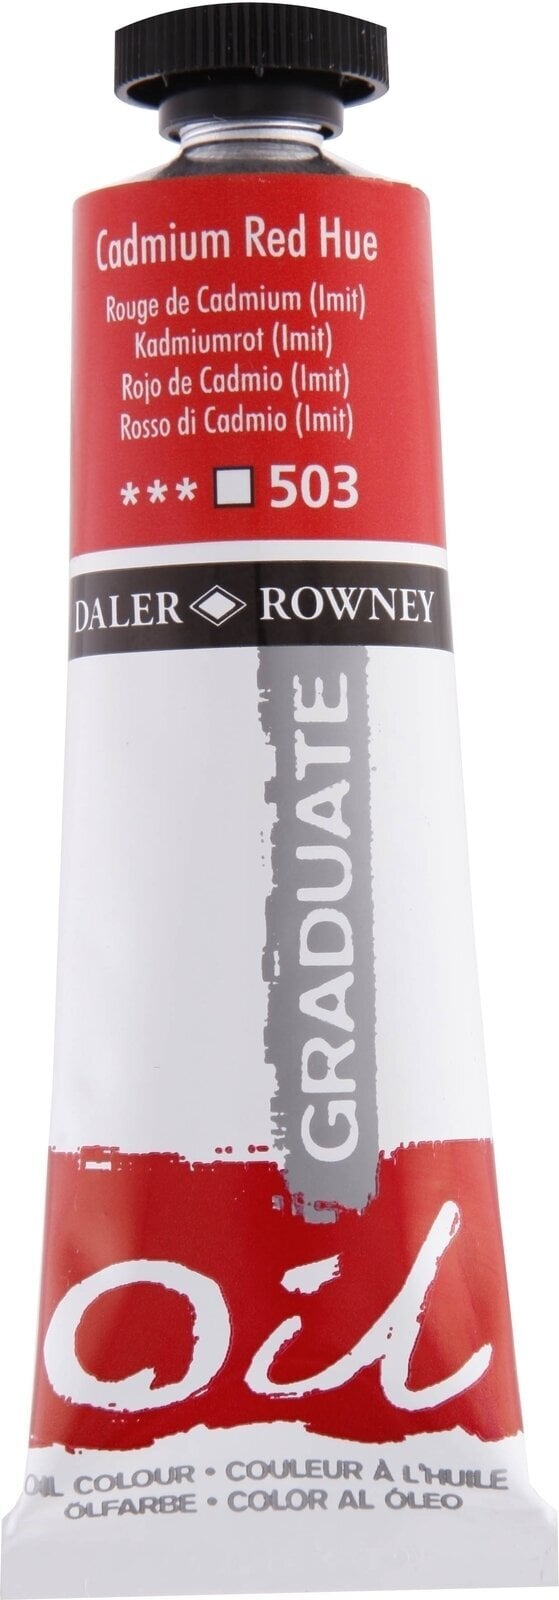 Oliefarve Daler Rowney Graduate Oliemaling Cadmium Red Hue 38 ml 1 stk.